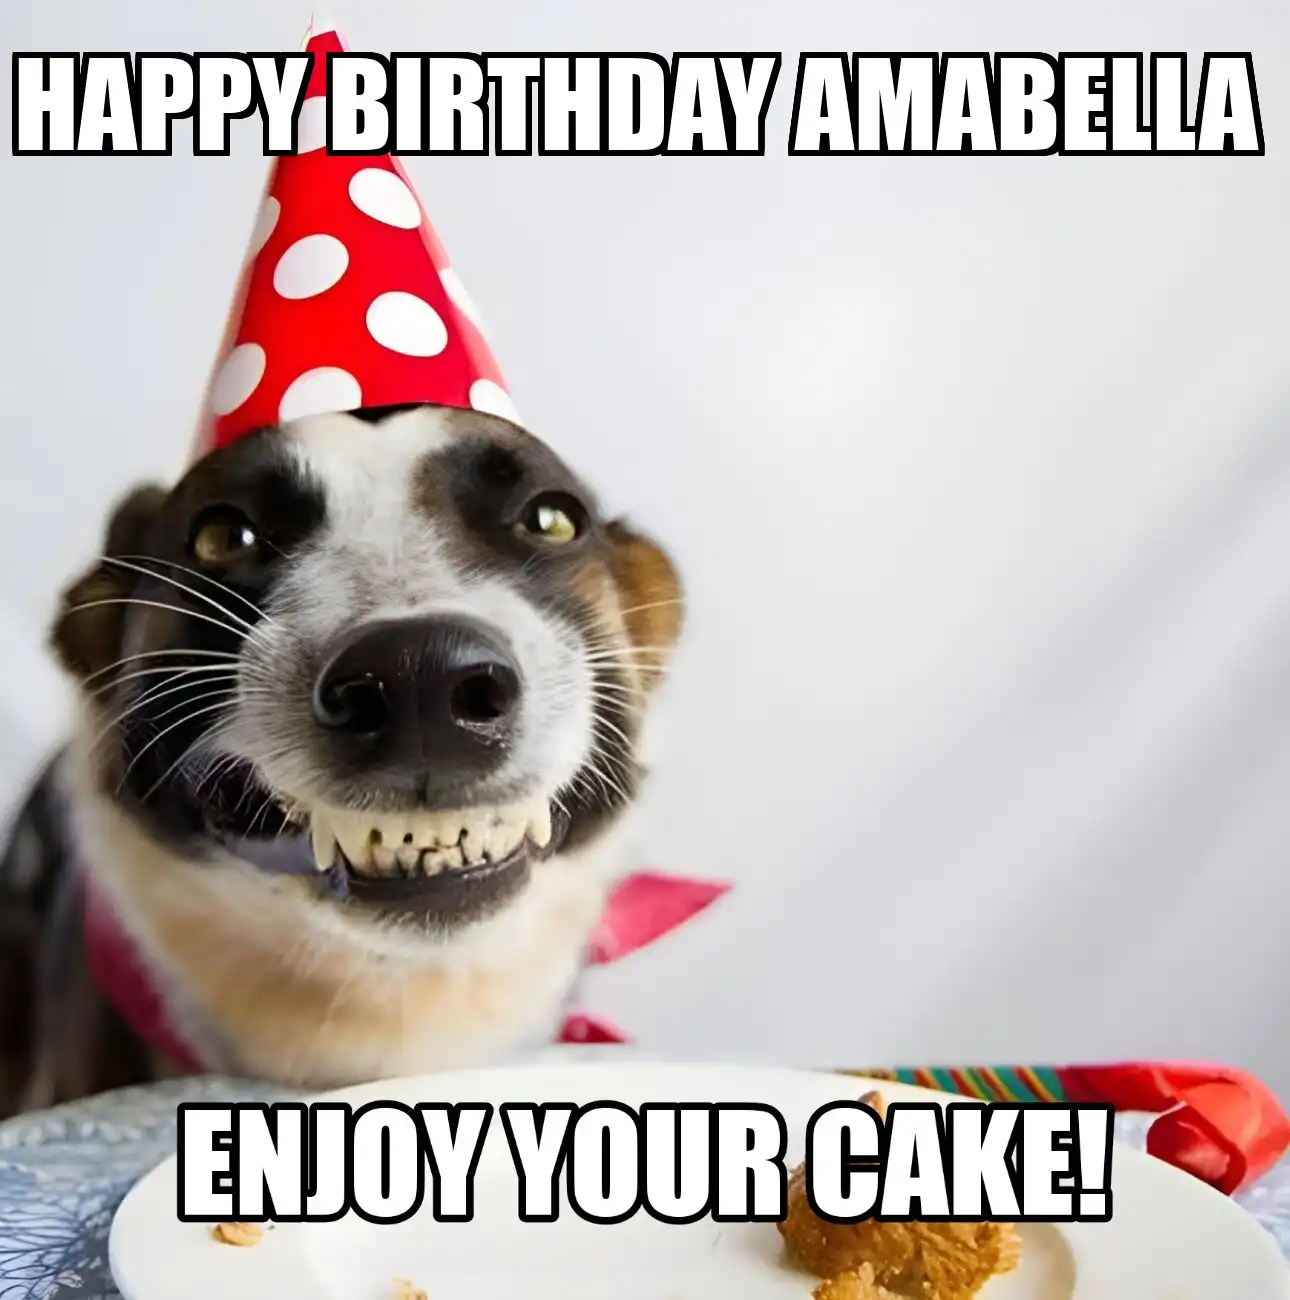 Happy Birthday Amabella Enjoy Your Cake Dog Meme